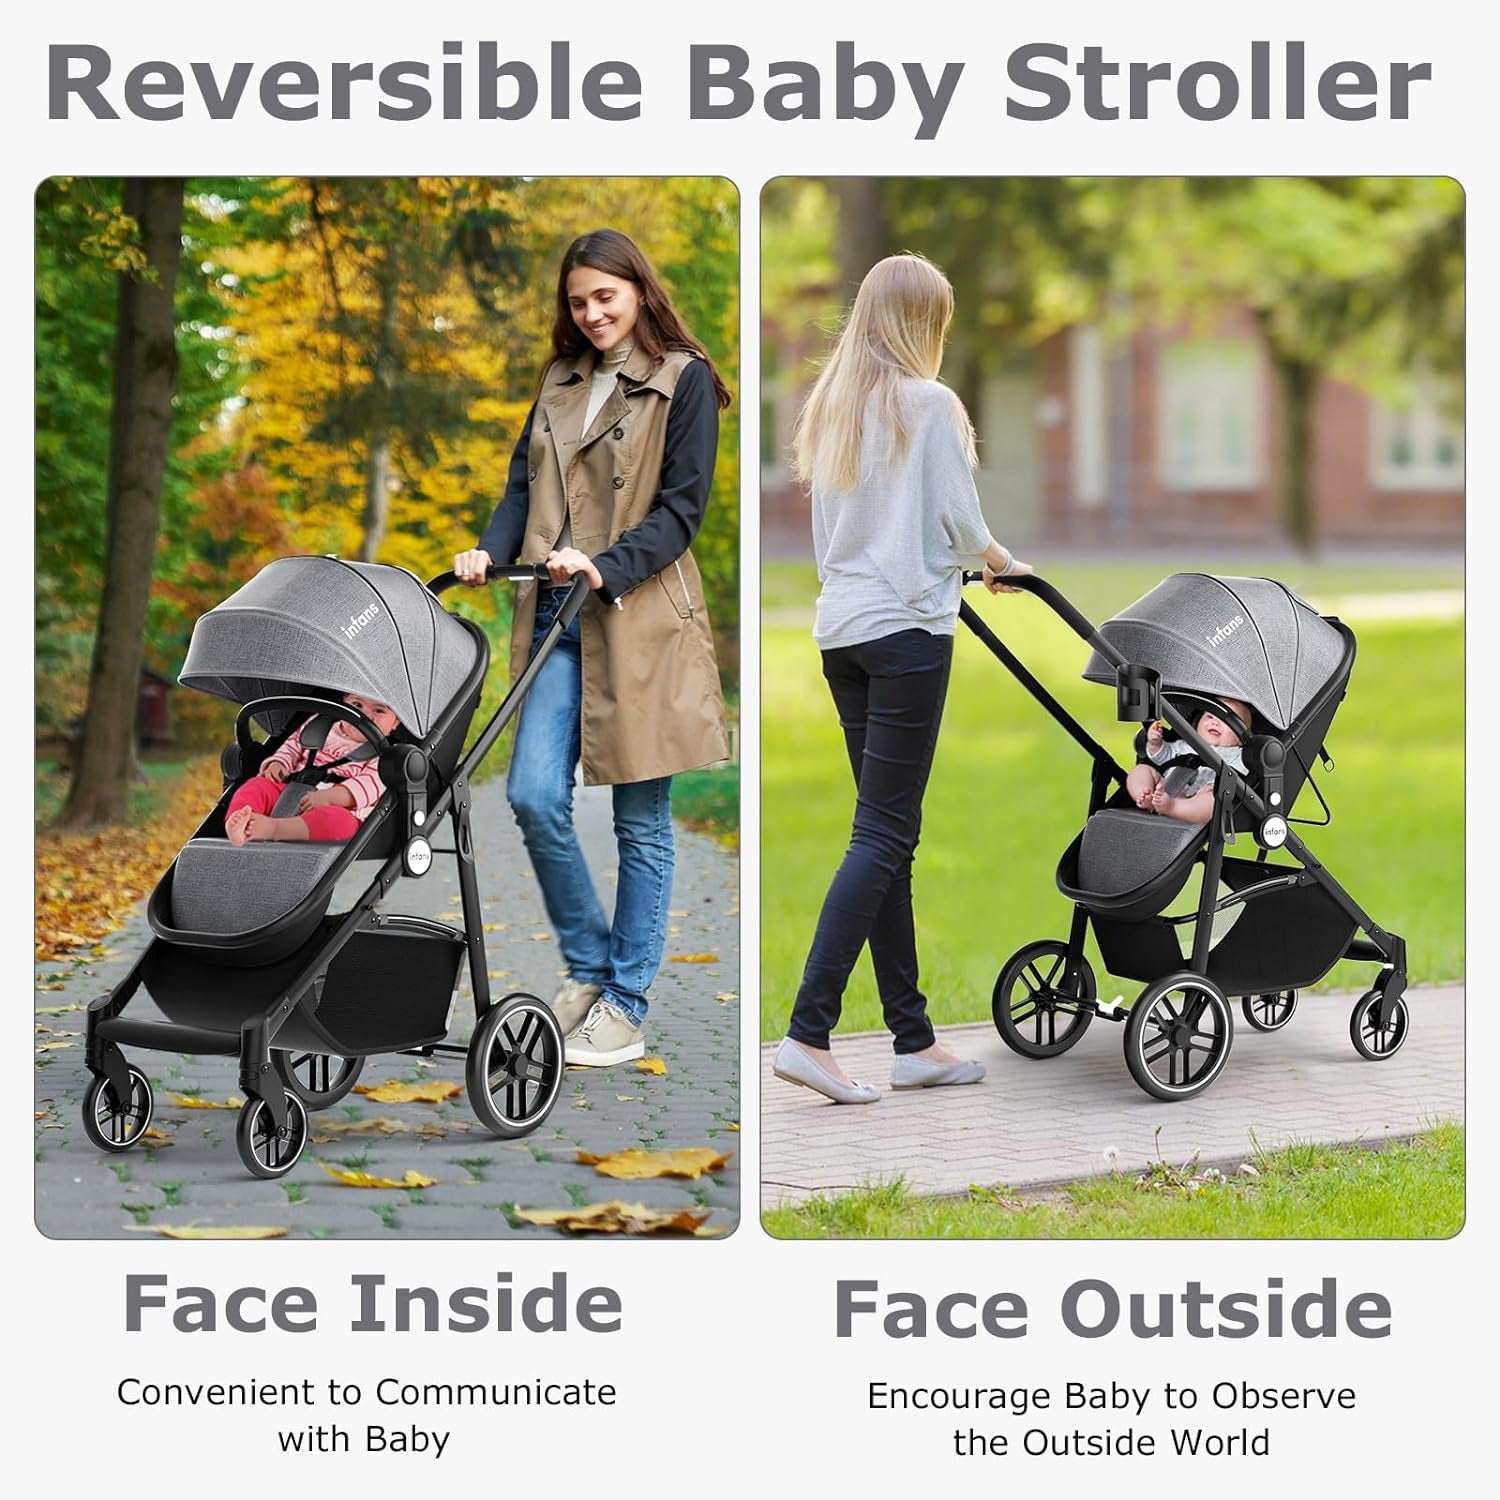 2 in 1 Baby Stroller, High Landscape Infant Stroller & Reversible Bassinet Pram, Foldable Pushchair with Adjustable Canopy, Cup Holder, Storage Basket, Suspension Wheels (Grey)